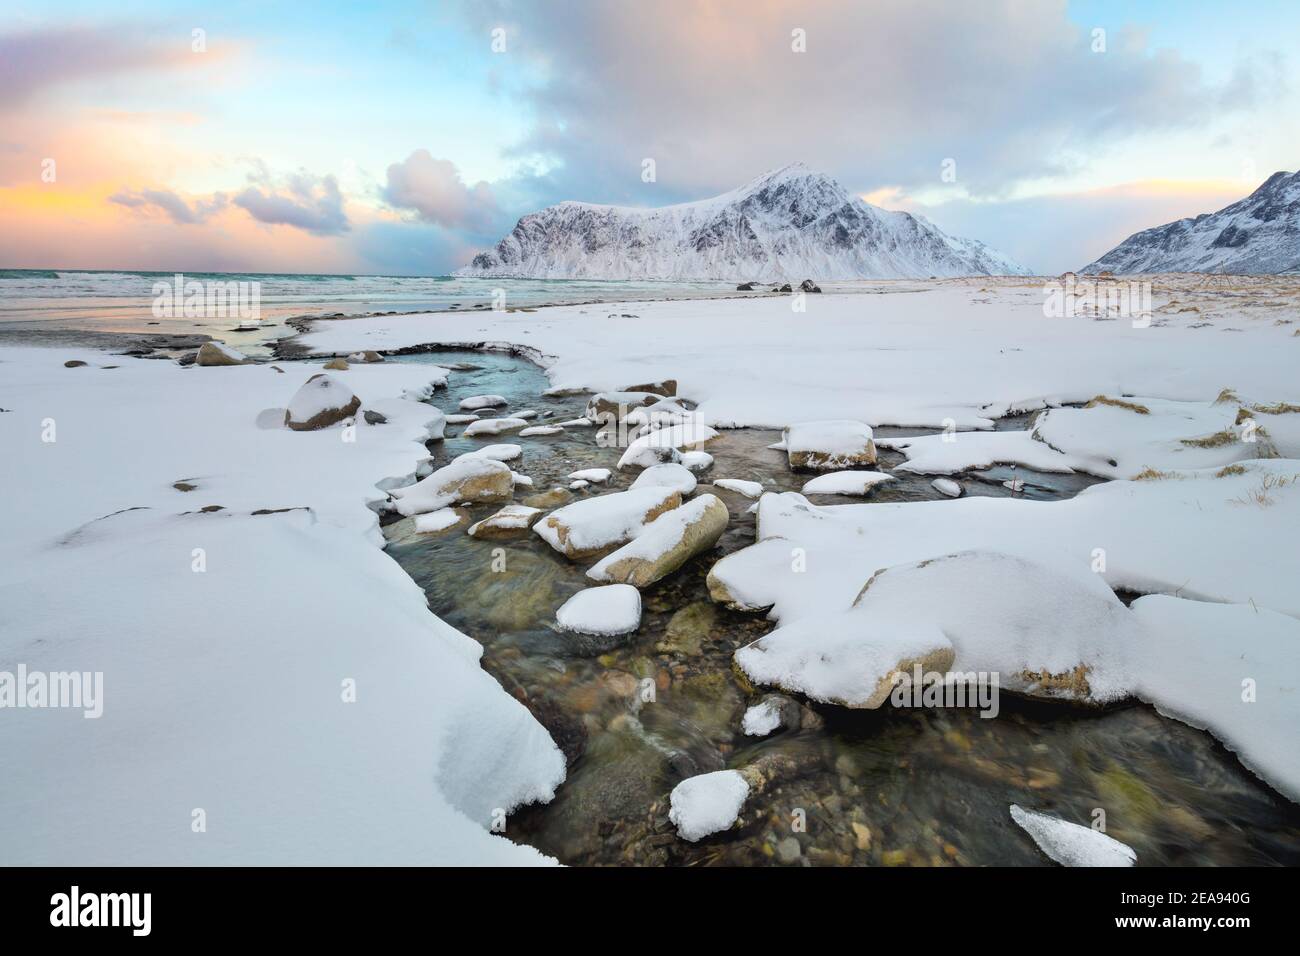 Incredibile mattina invernale al mare settentrionale, neve e montagne. Regione scandinava, Norvegia, Isole Lofoten, Europa Foto Stock